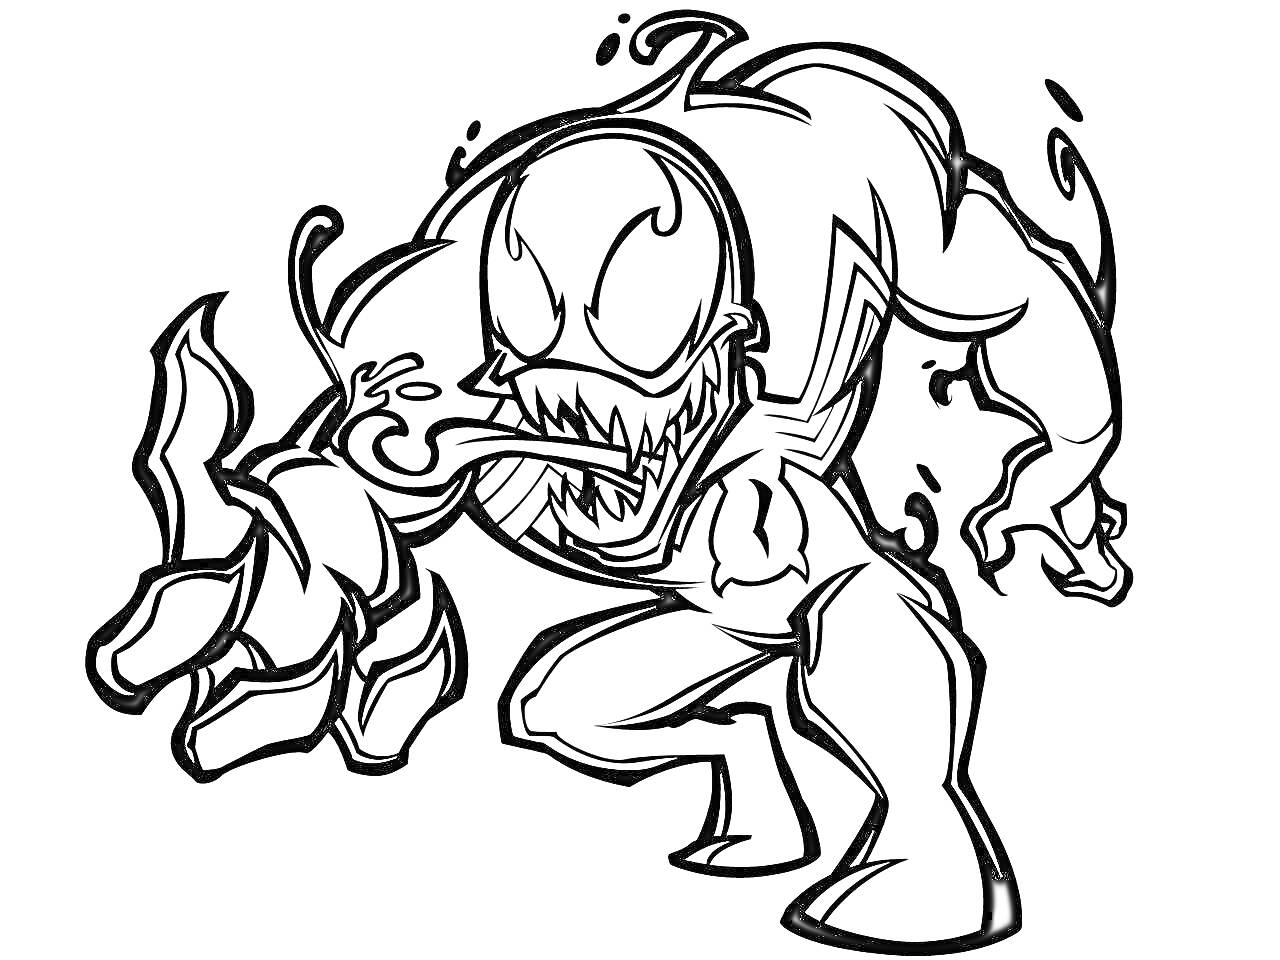 Раскраска Мультяшный Веном с высунутым языком и оскаленными зубами, в позе нападения